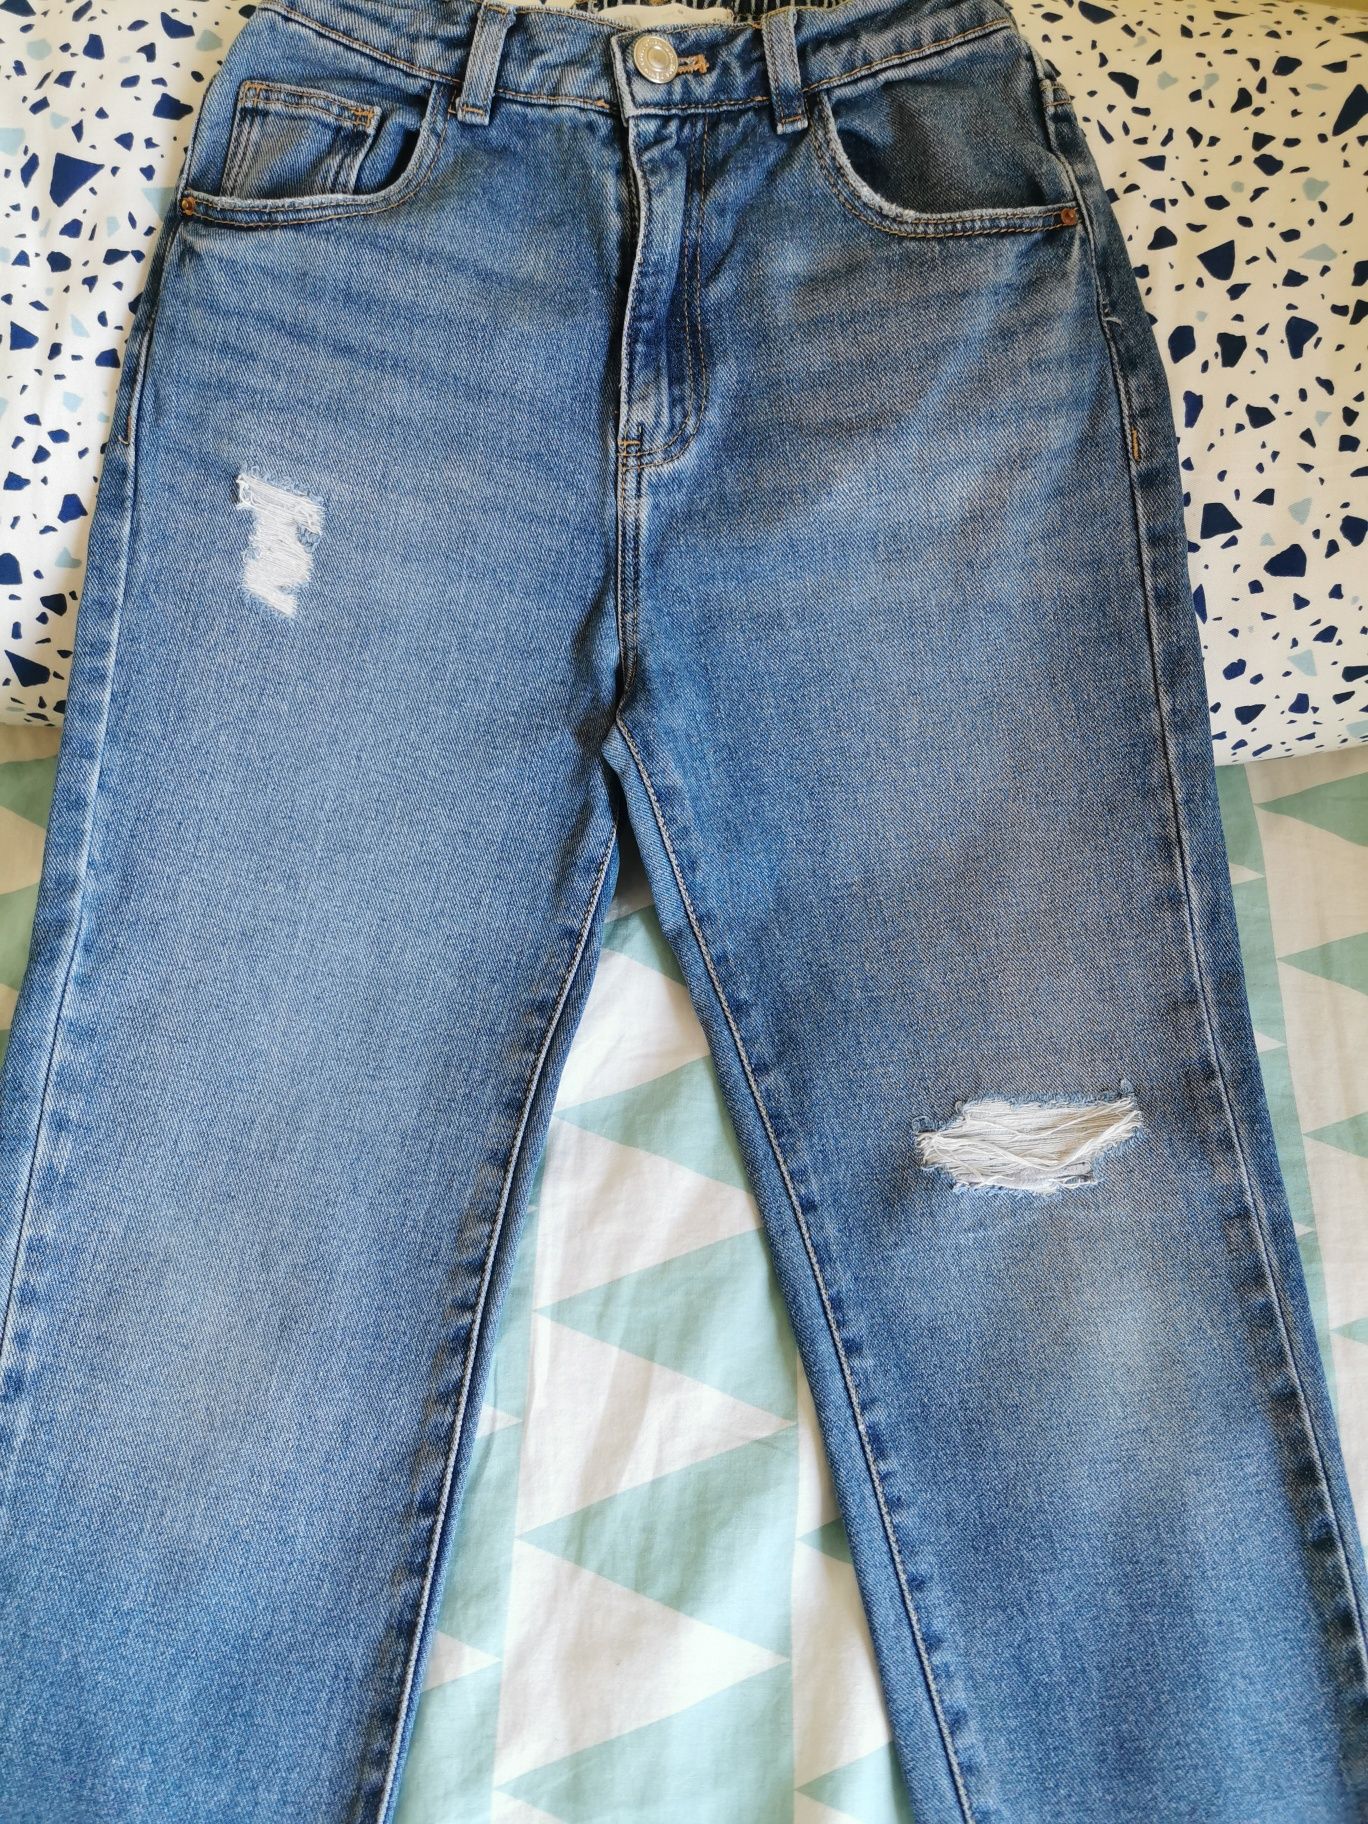 Spodnie jeansowe /jeansy dla dziewczynki z Zary, rozmiar 134